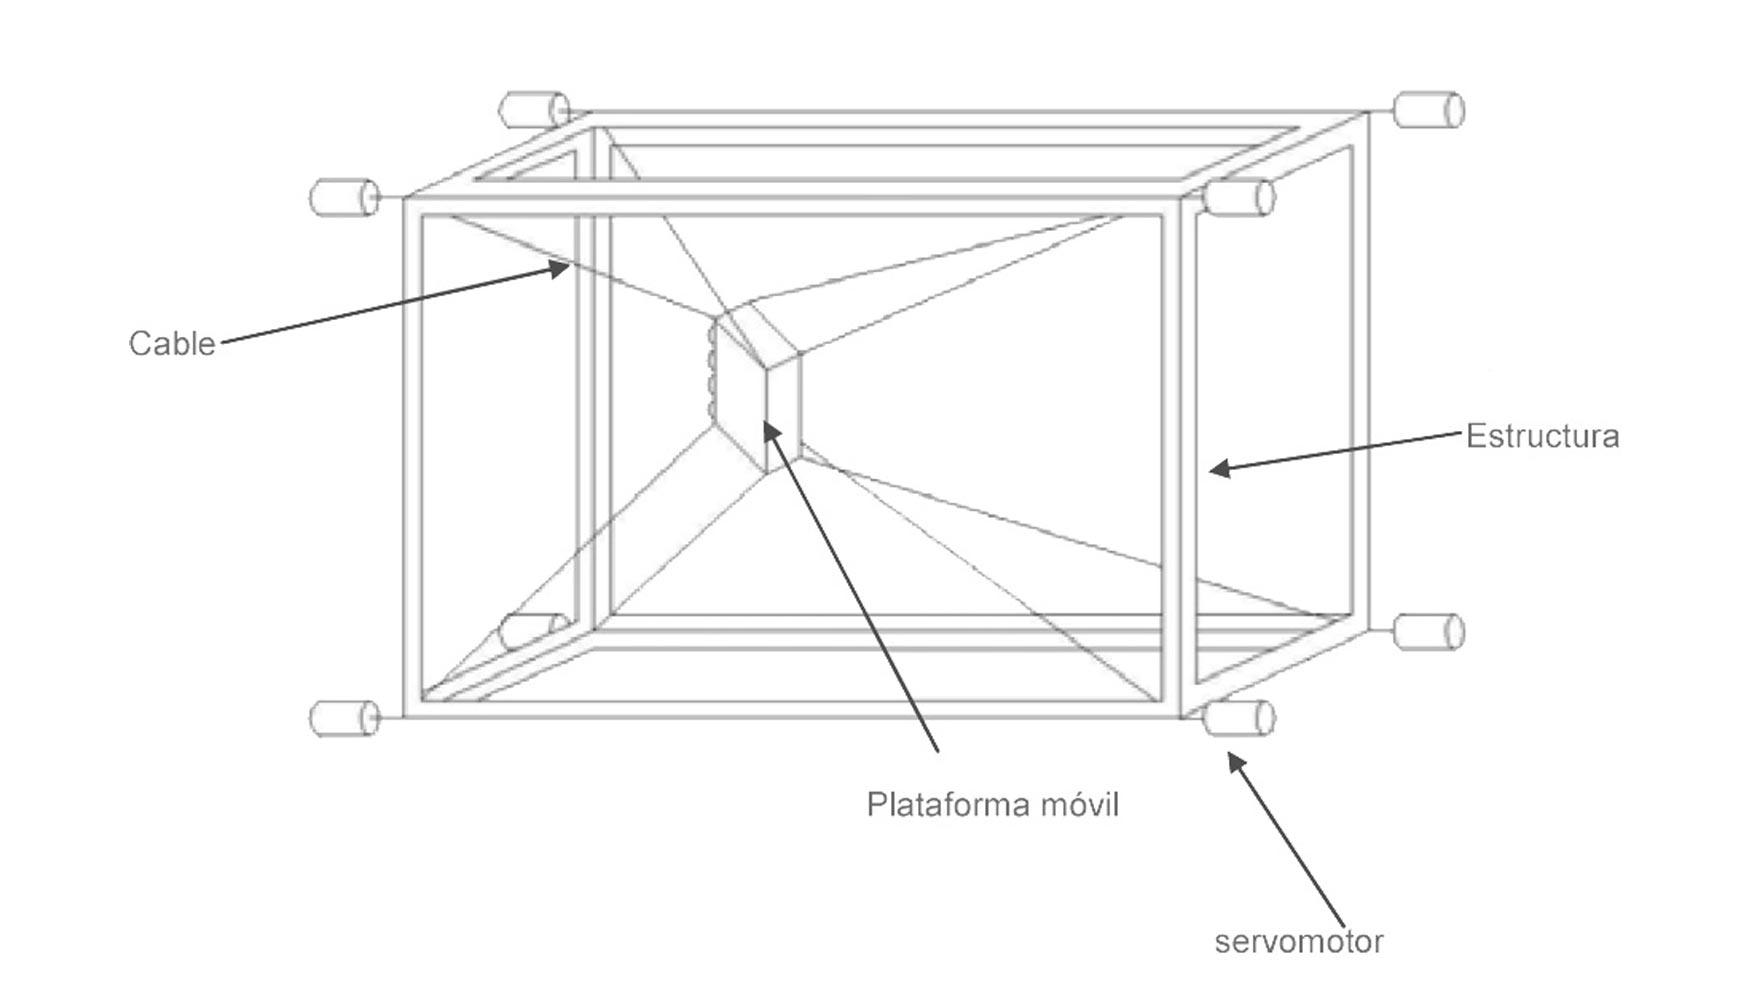 Figura 2. Componentes principales de una estructura guiada por cables